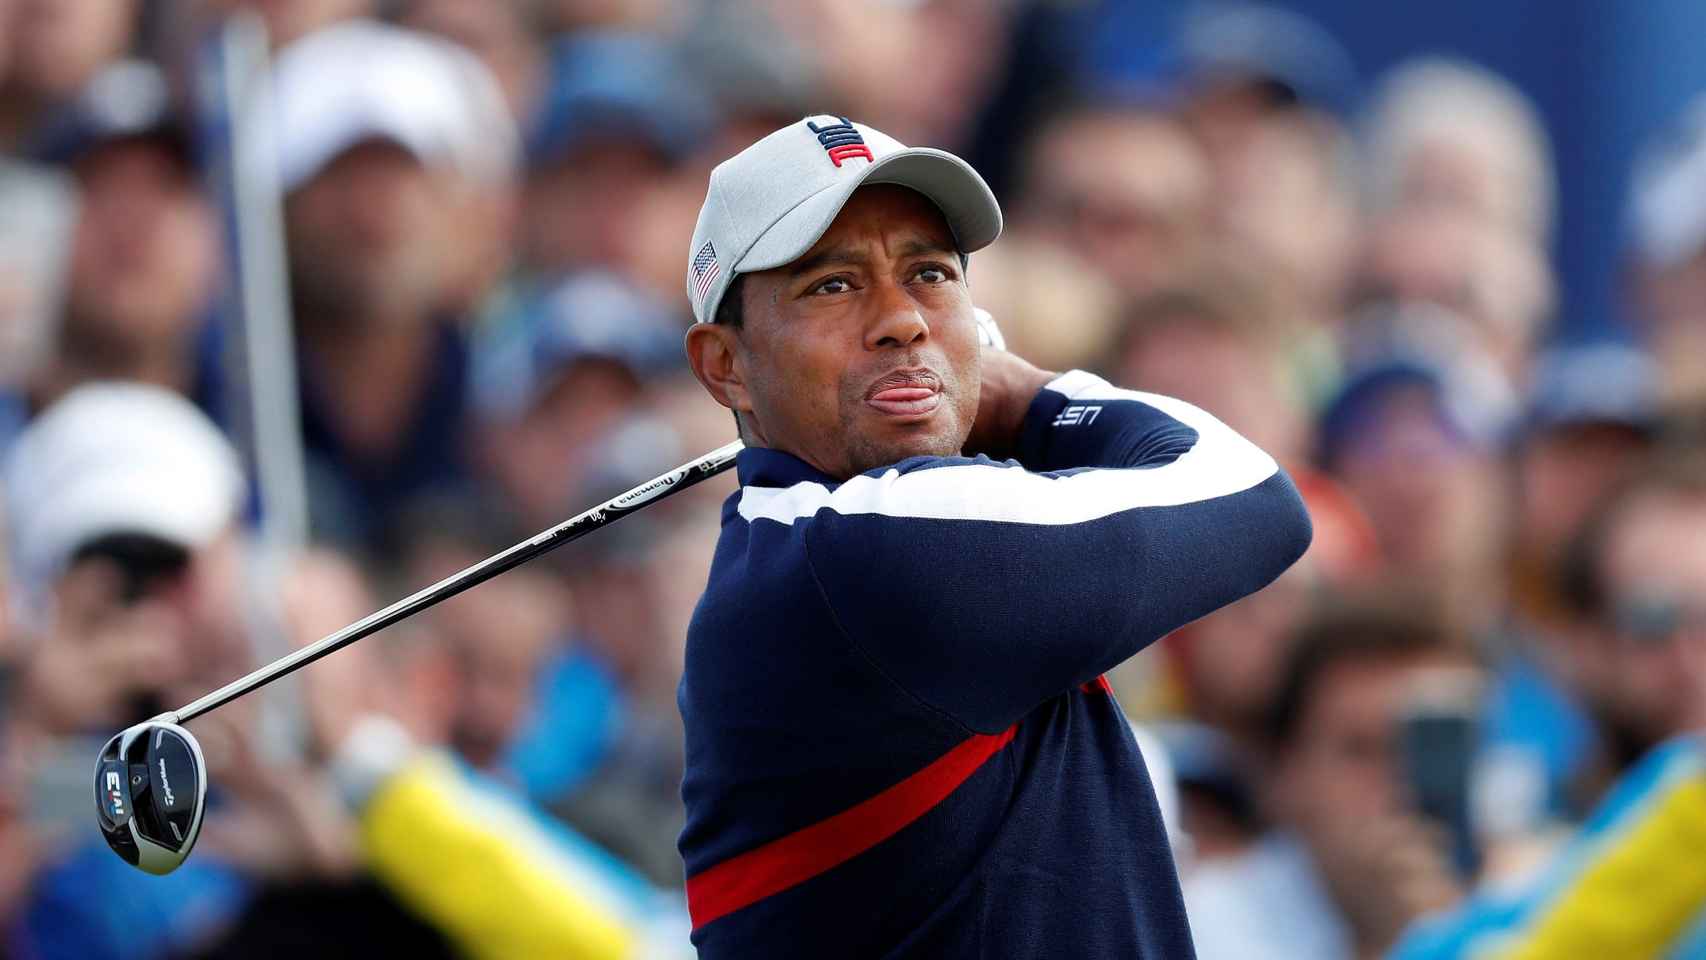 El estadounidense Tiger Woods compite en la modalidad de cuatro bolas de la Ryder Cup 201